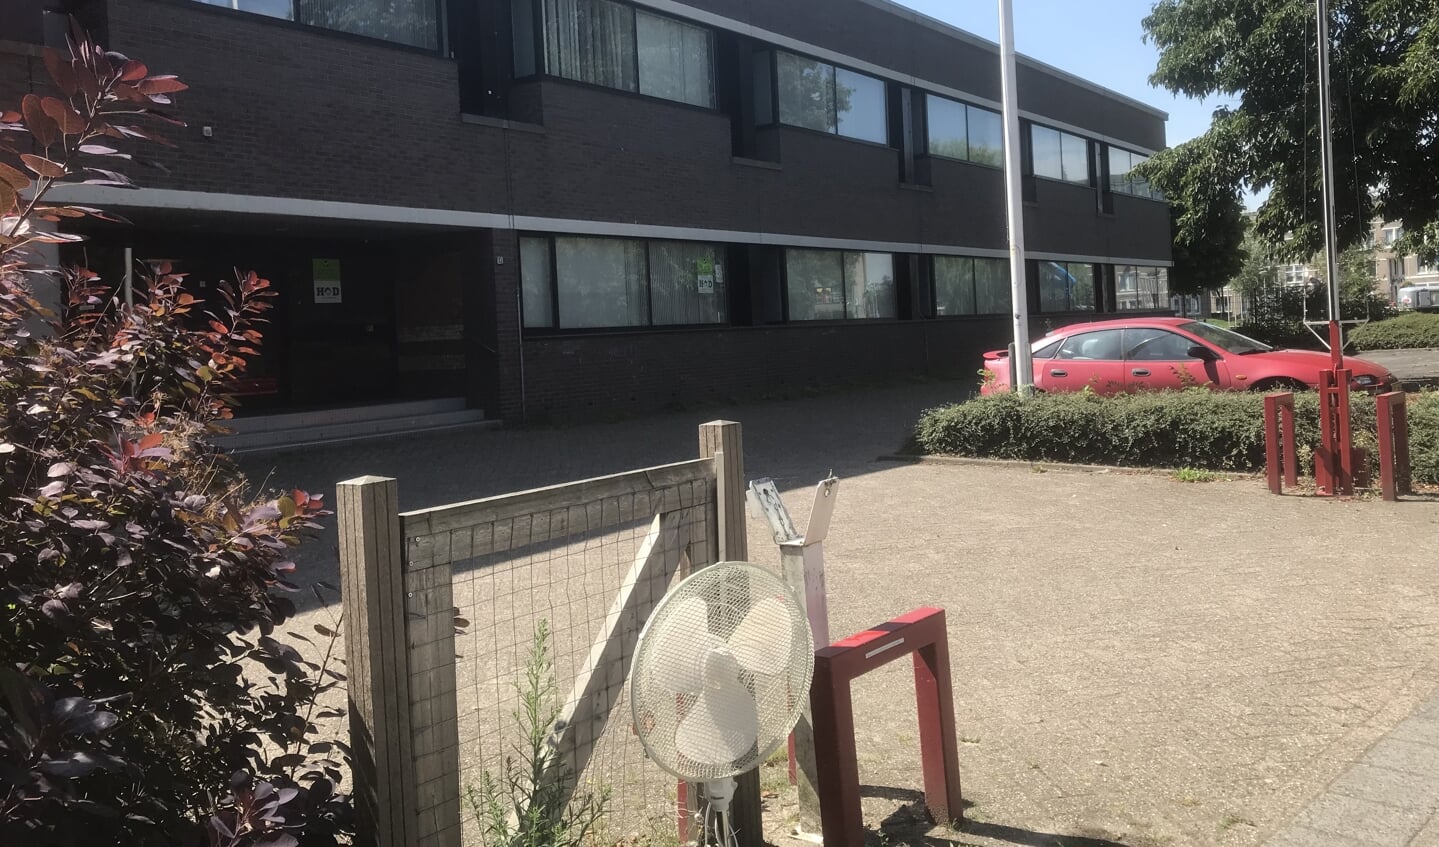 De gemeenteraad wilde geen AZC in het voormalige belastingkantoor in de Gildenwijk